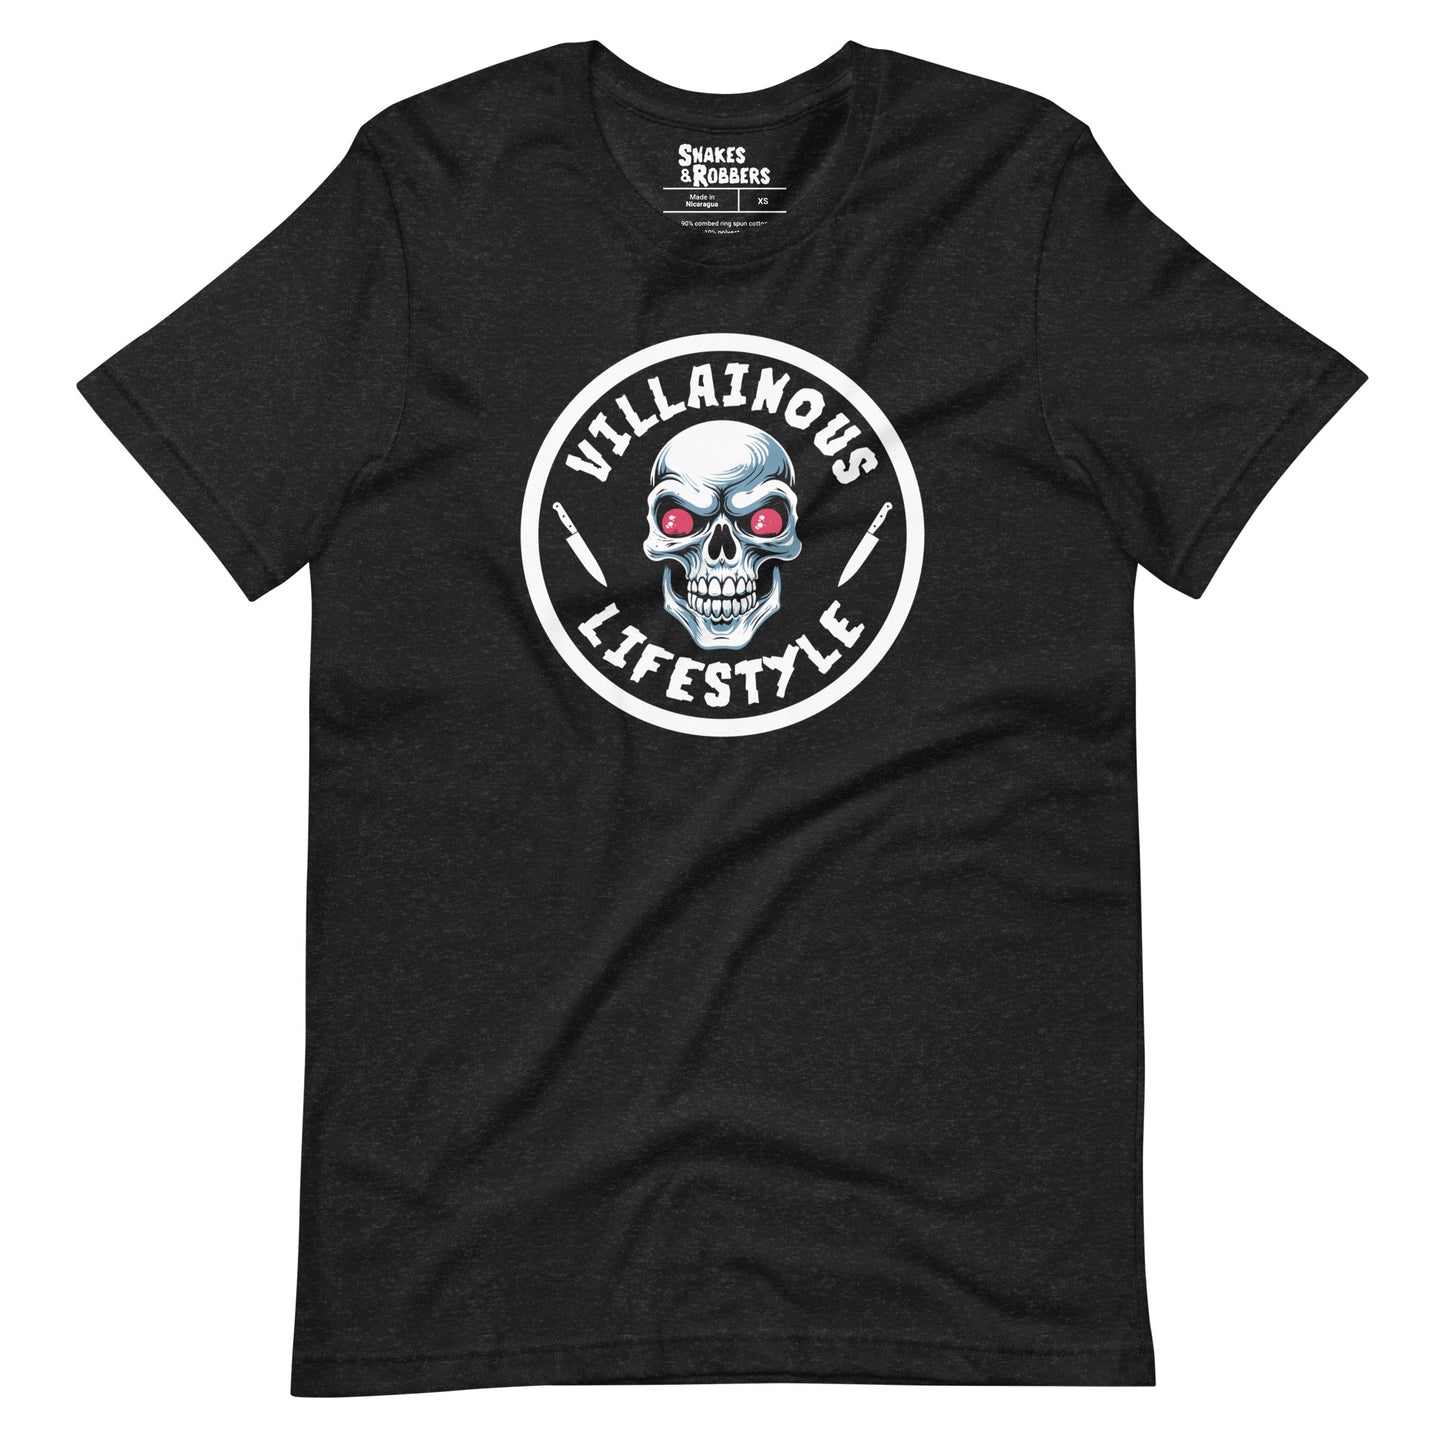 Villainous Lifestyle Unisex Retail Fit T-Shirt